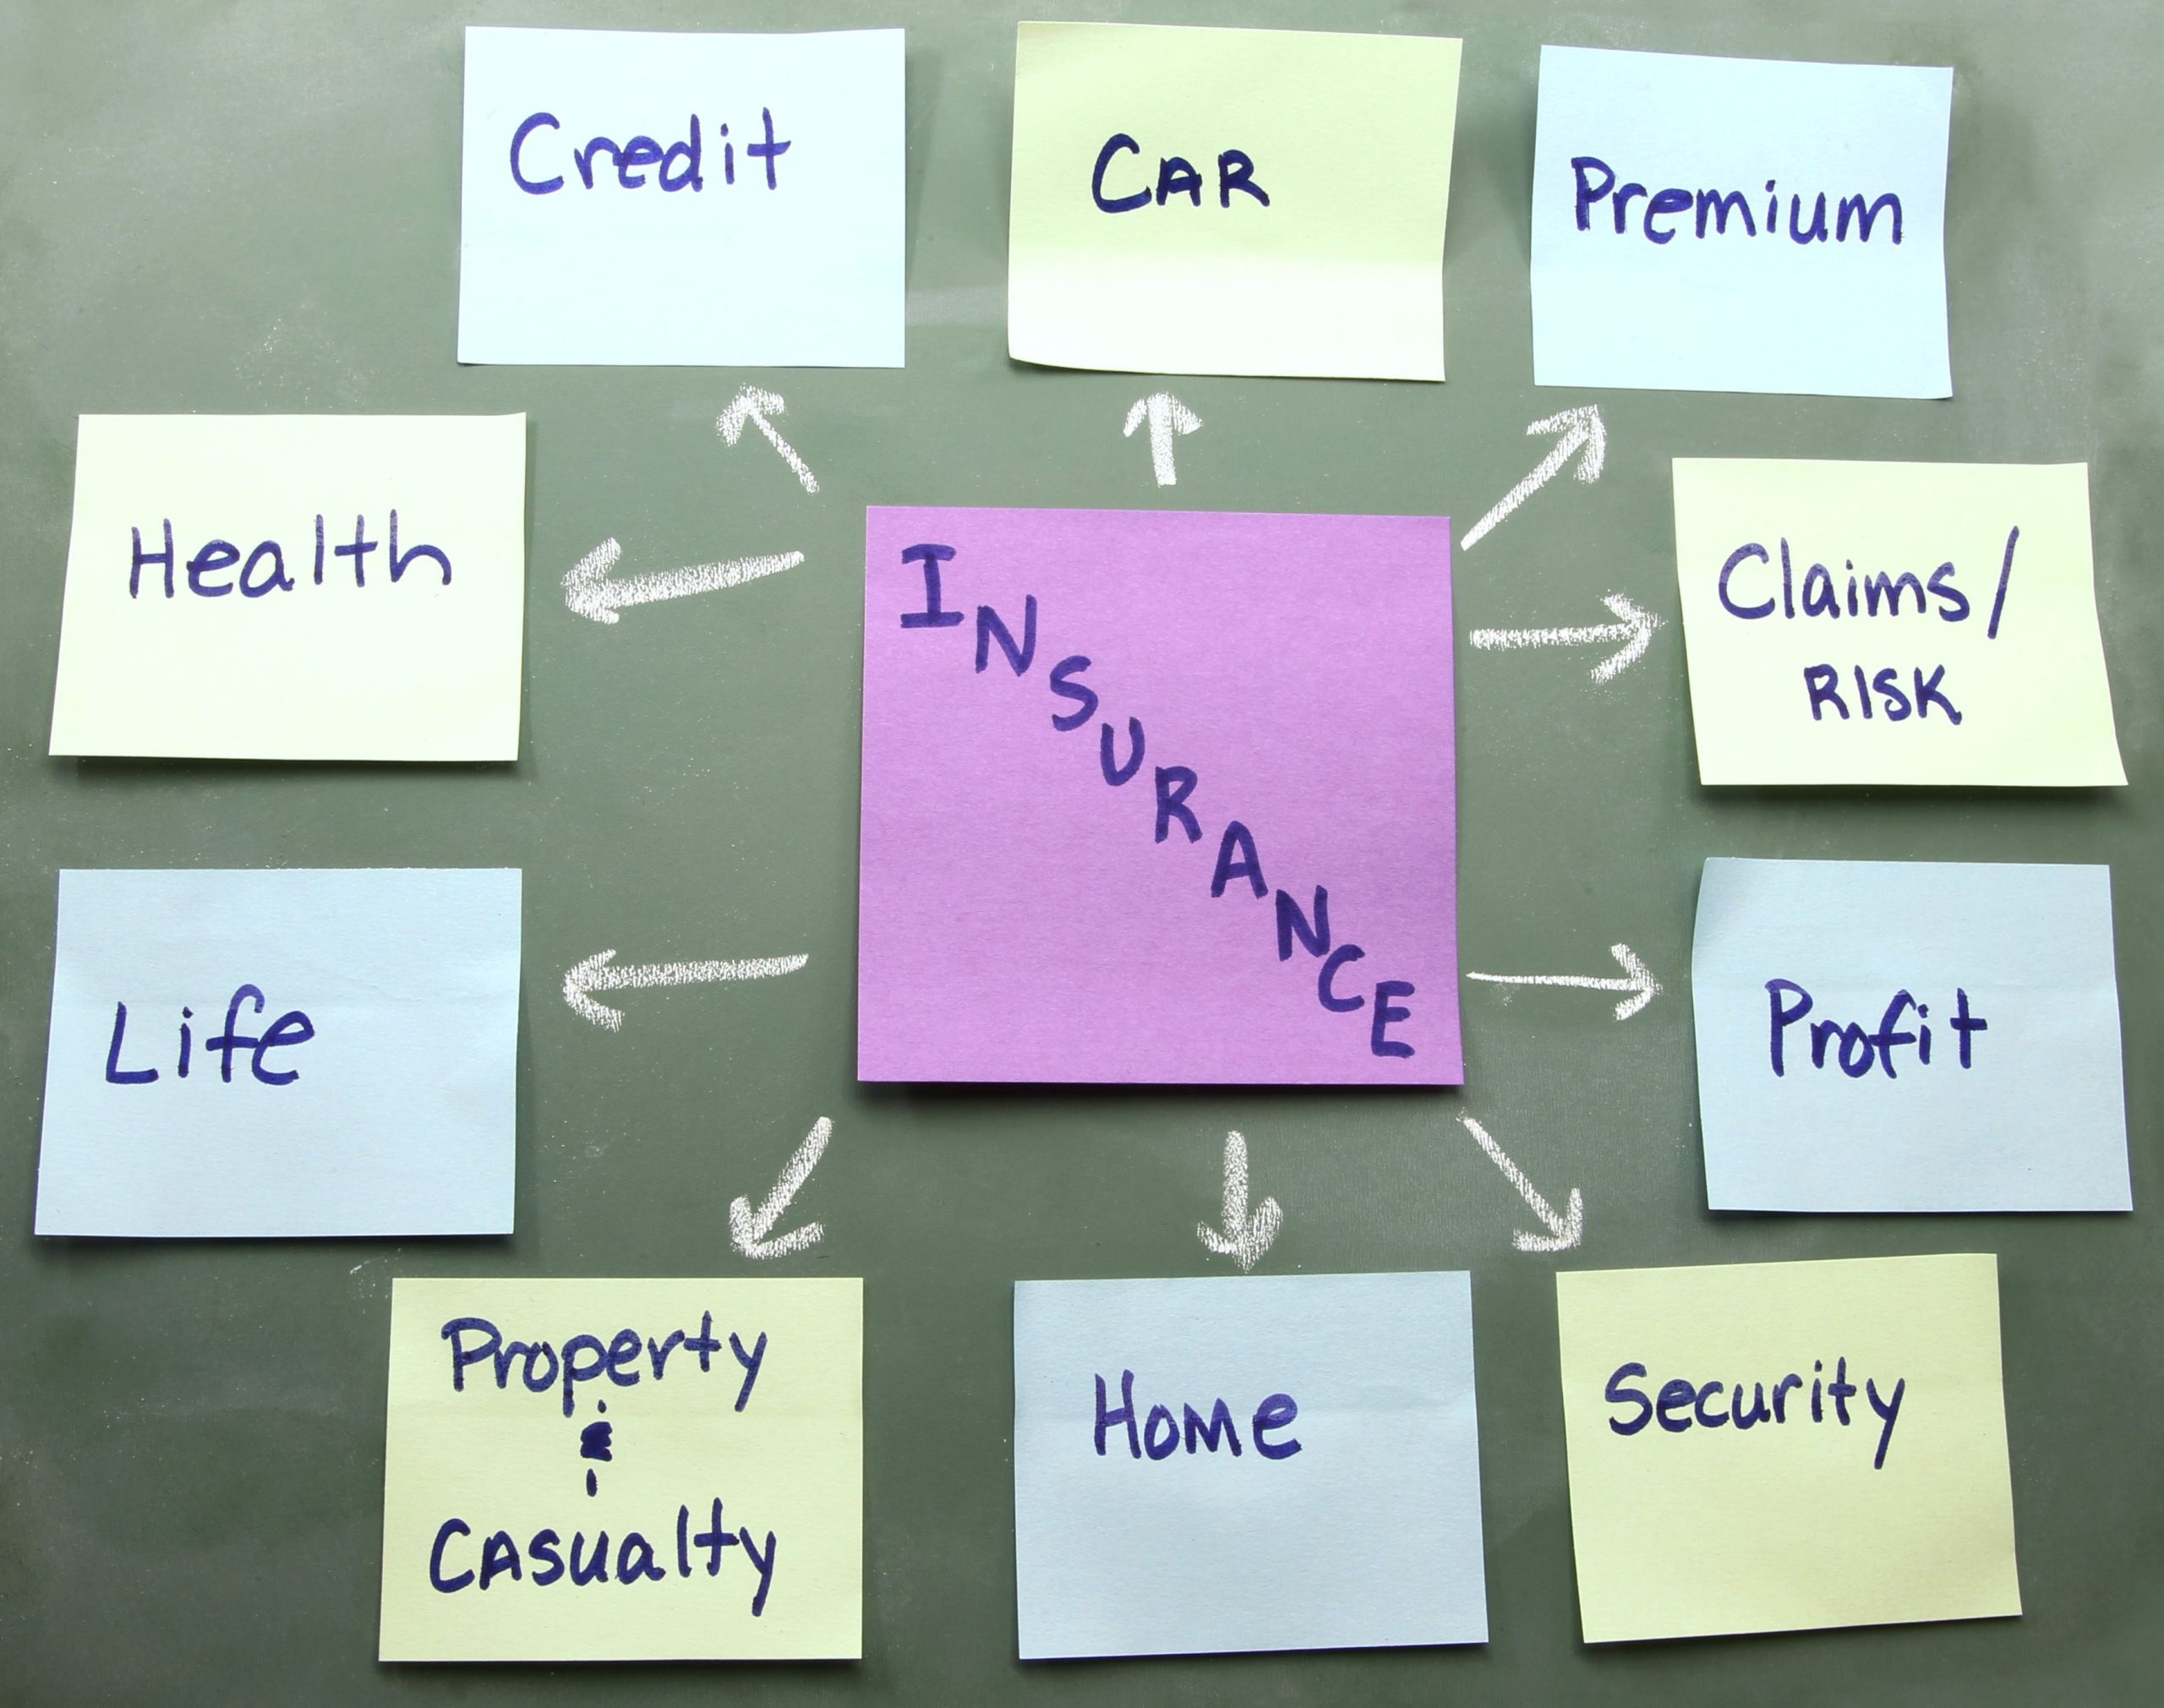 Bảo hiểm nhân thọ là gì? Có các loại hình bảo hiểm nhân thọ nào trên thị trường?